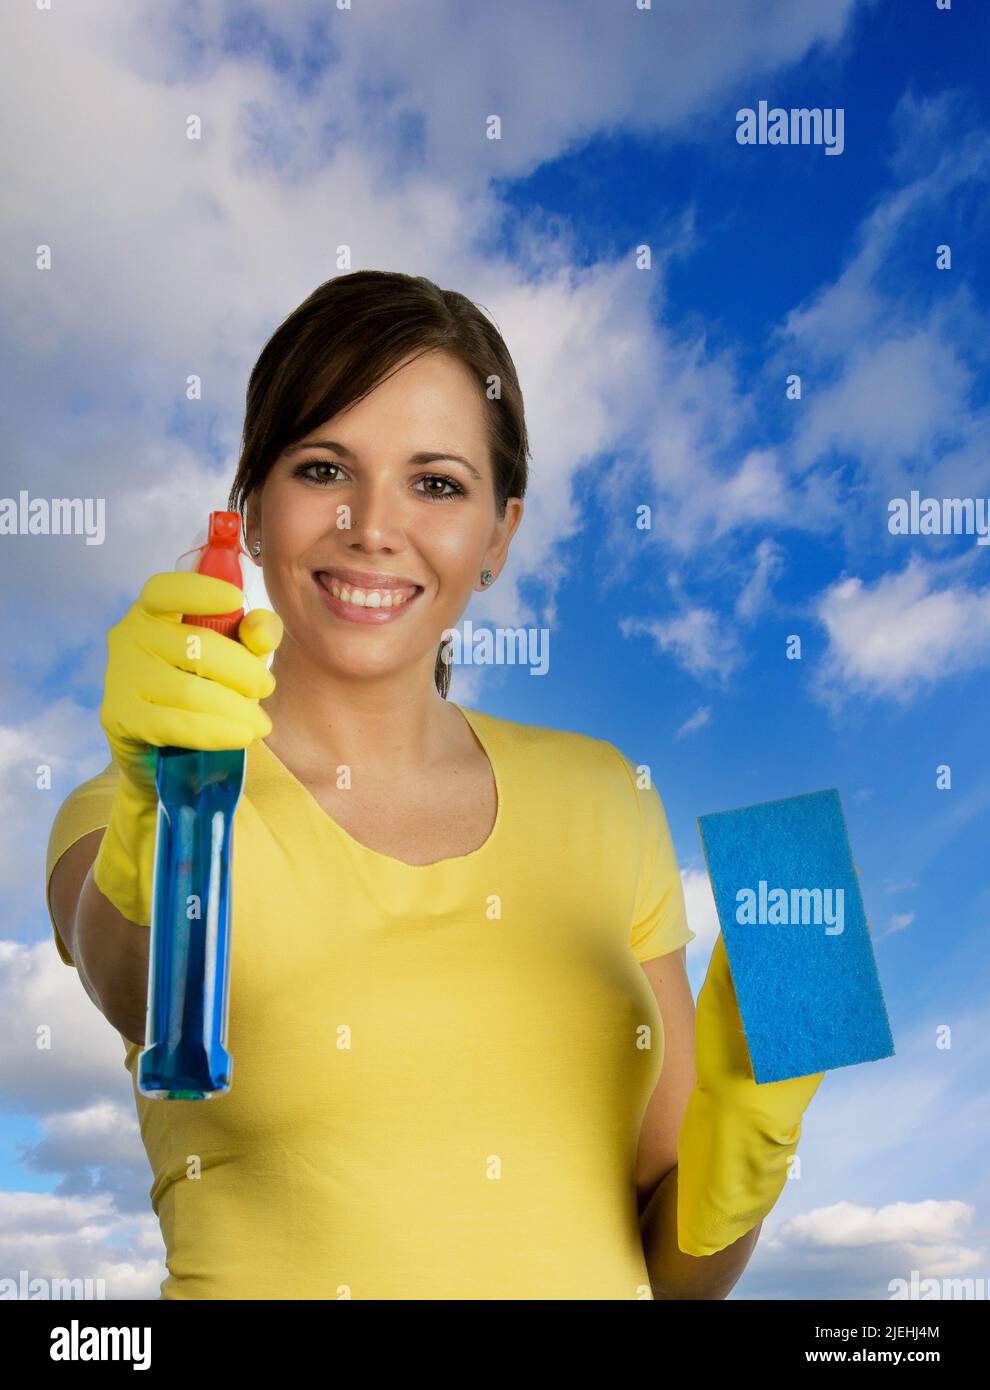 Junge Frau mit Reinigungsmittel putzt eine Fensterscheibe von aussen, durcvh die Scheibe fotografiert, blauer Himmel, Stock Photo